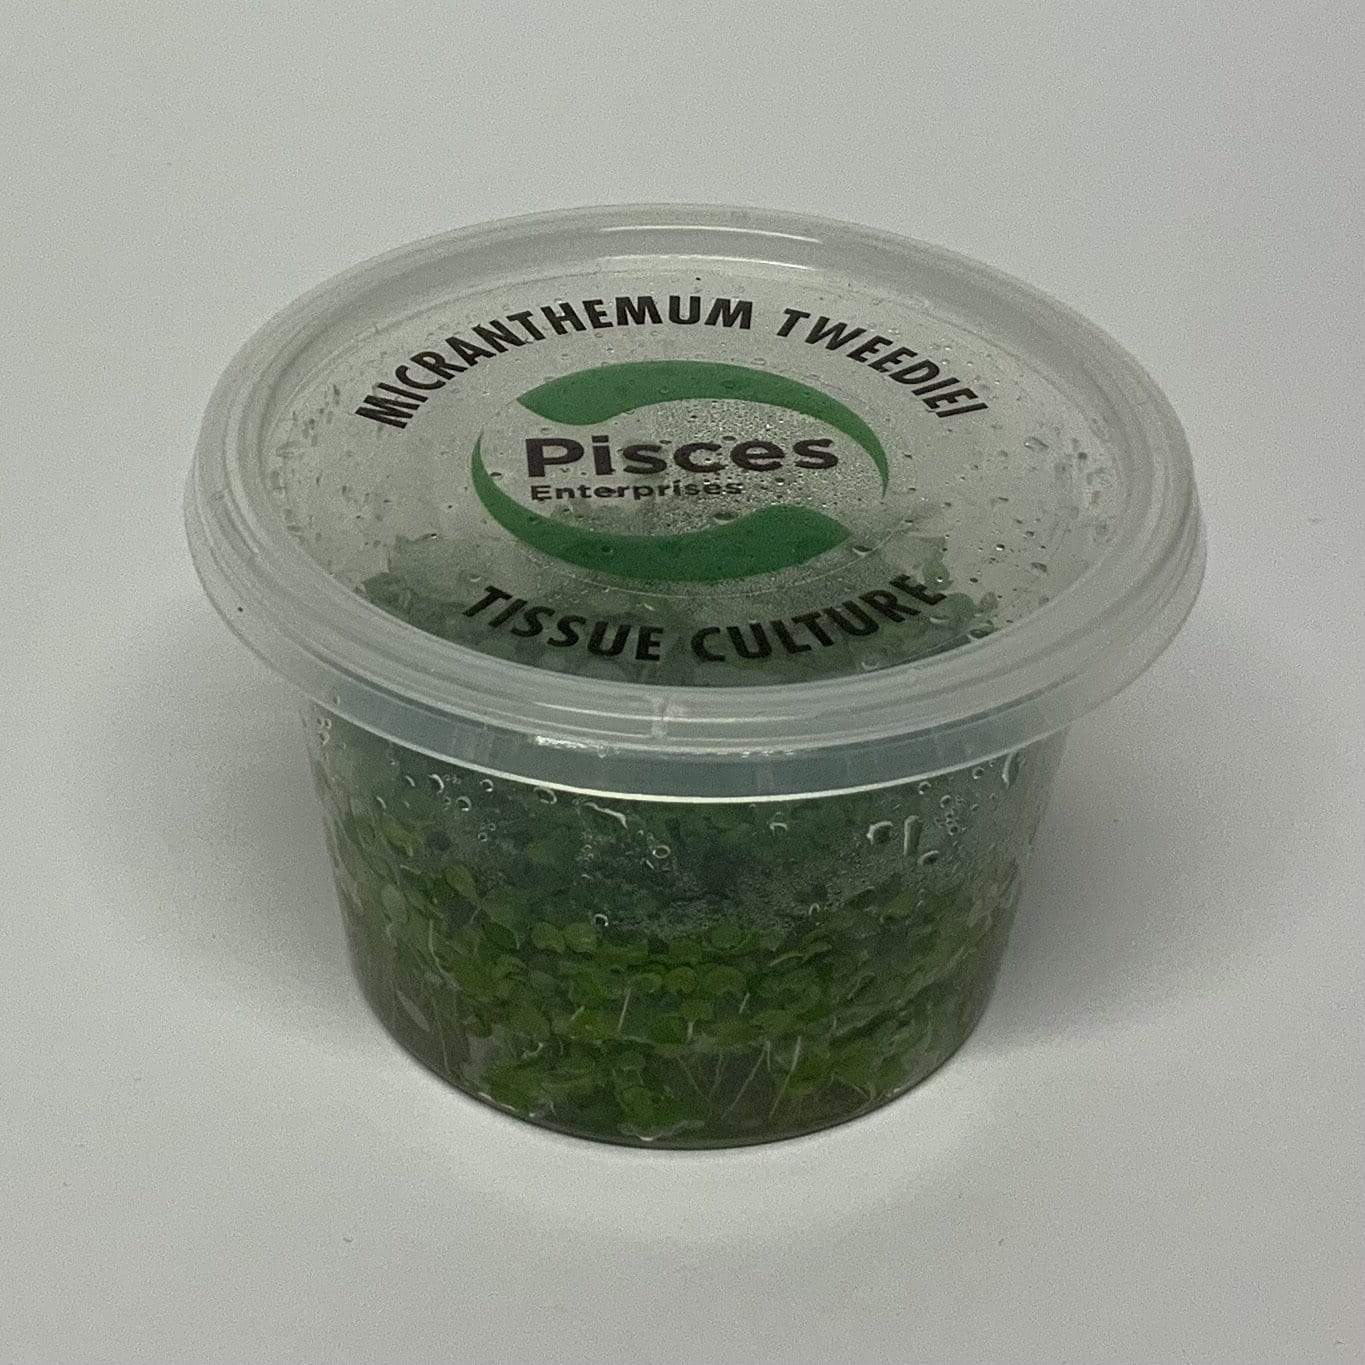 Pisces Enterprises Tissue Culture Micranthemum 'Monte Carlo' Tissue Culture